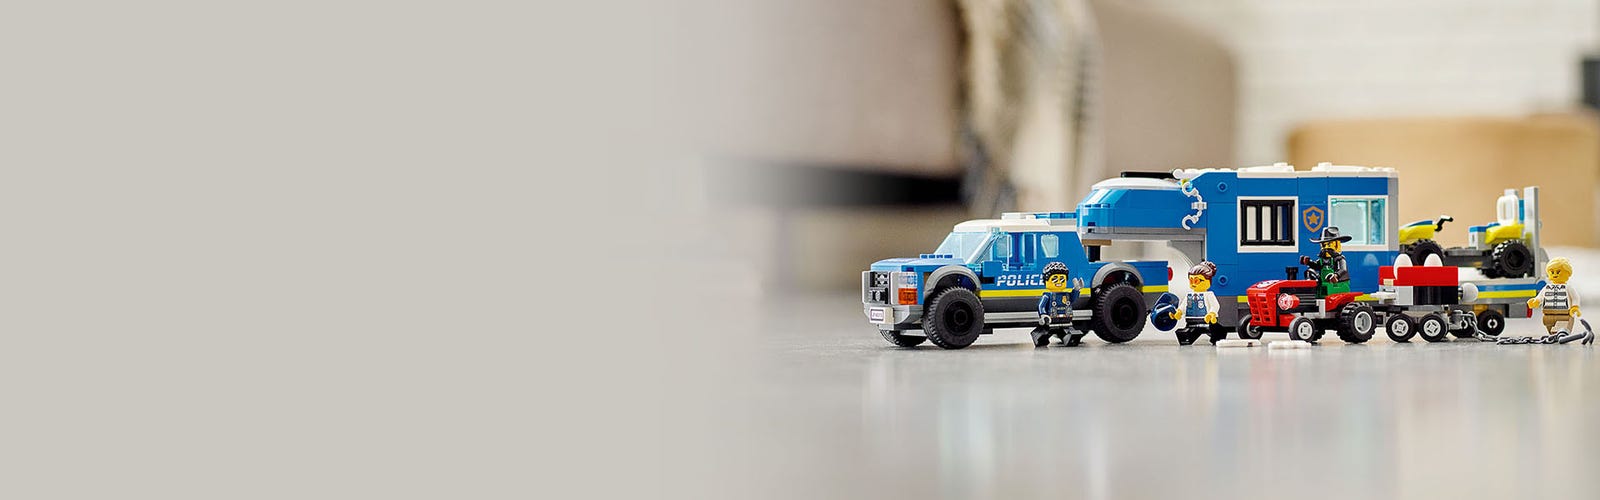 Lego®city 60315 - le camion de commandement mobile de la police